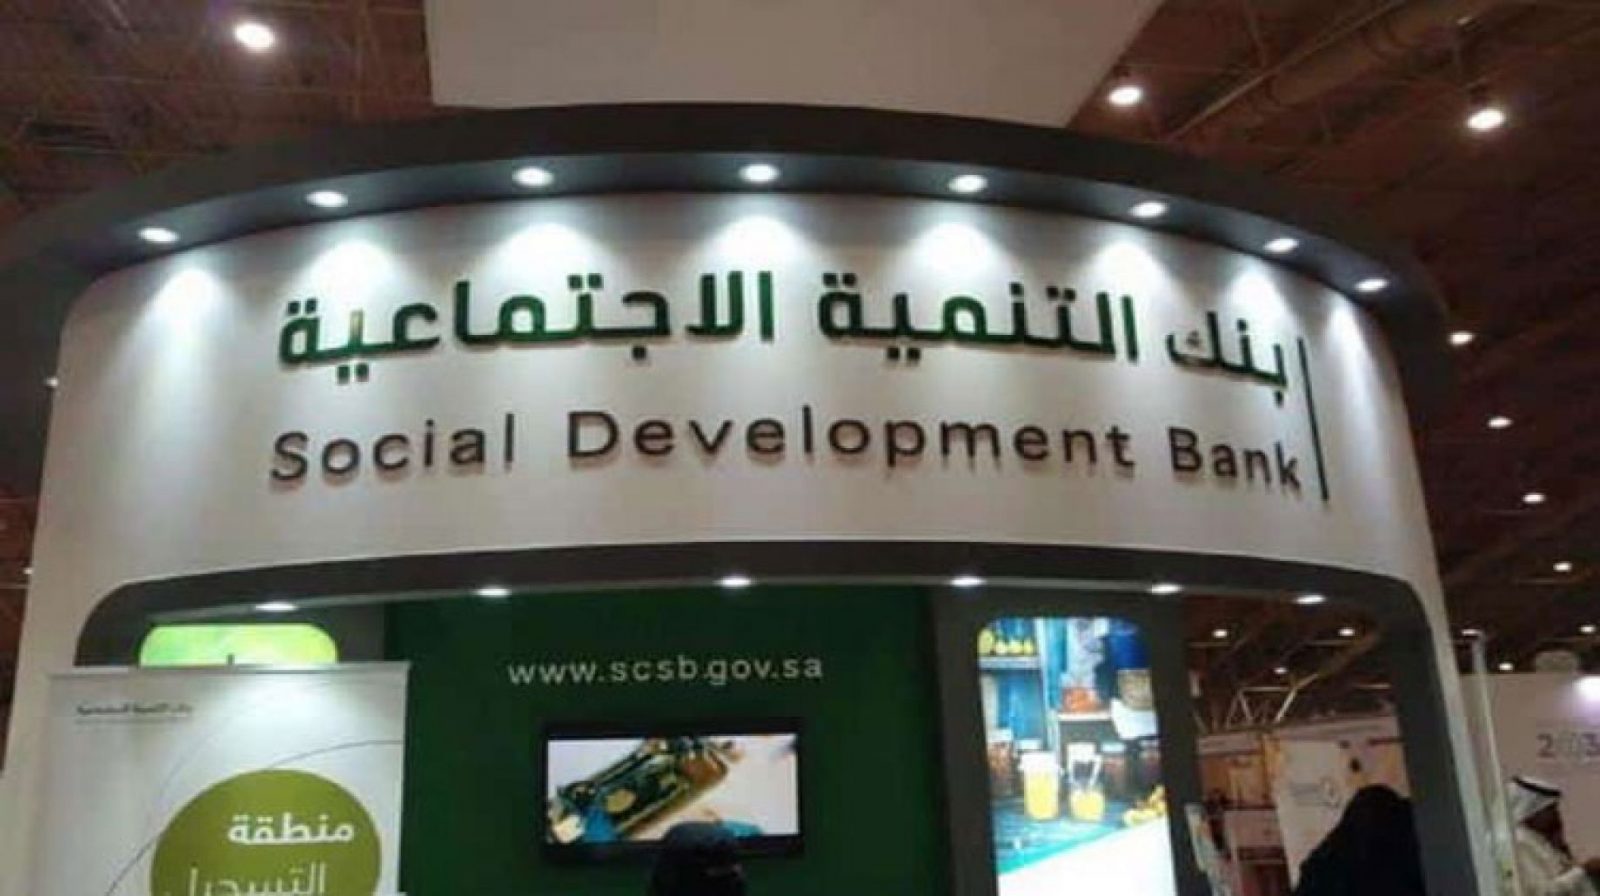 كيفية الحصول على تمويل بواسطة بنك التنمية الاجتماعية 1443؟